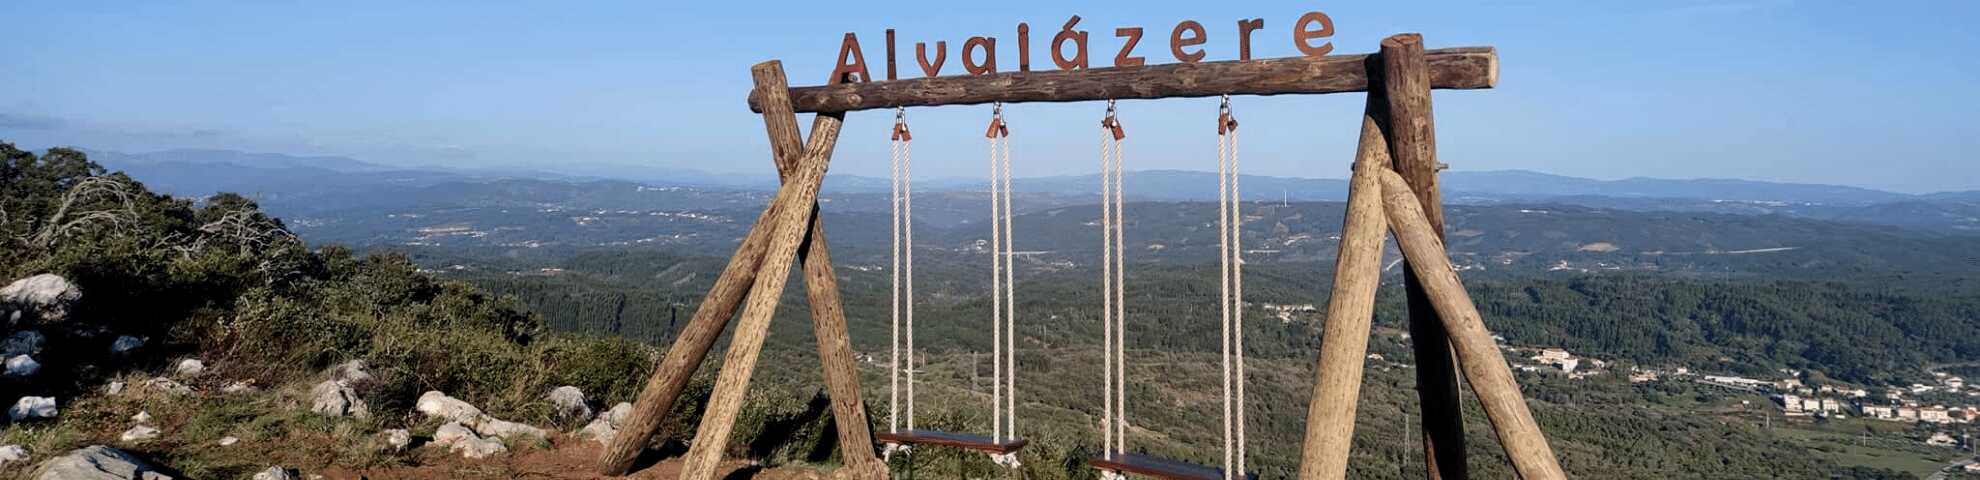 Fase 8. Alvaiázere - Alvorge (22,7 km)